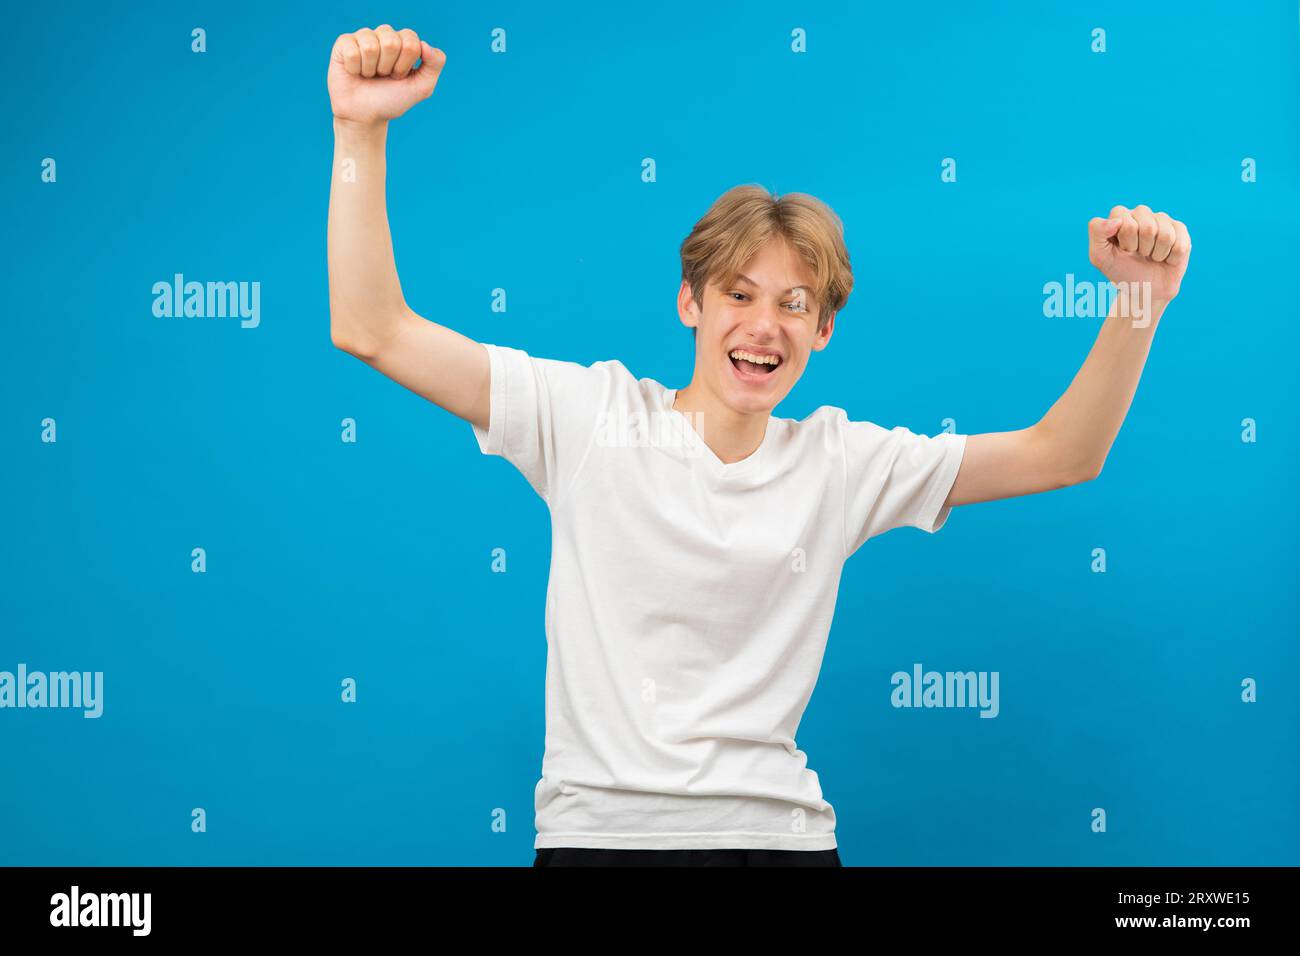 Extrem aufgeregt überglücklich Teenager-Junge schrie ja Geste, erstaunt über seinen Sieg, Triumph. Innenaufnahme des Studios isoliert auf blauem Hintergrund Stockfoto